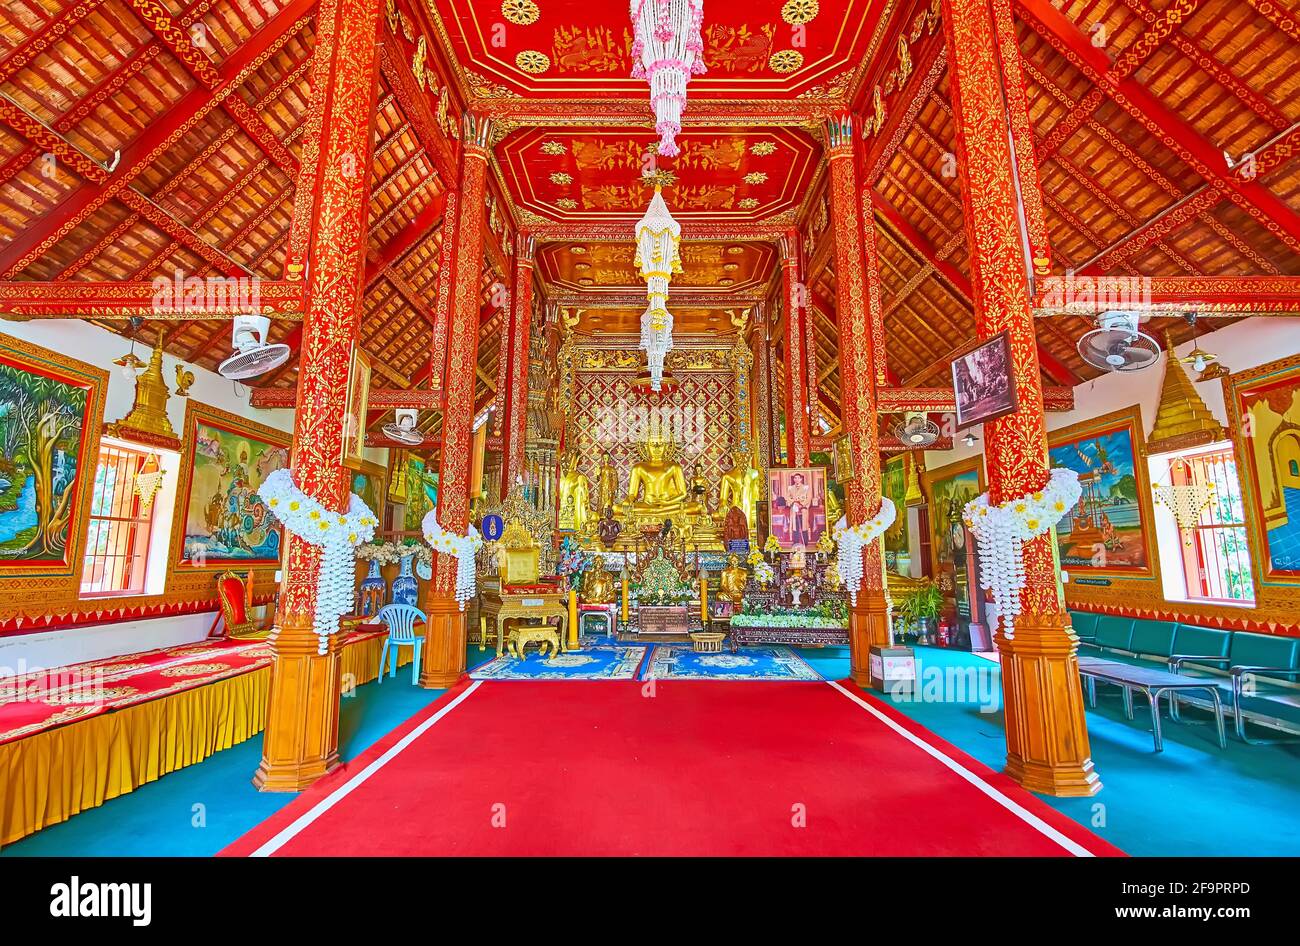 CHIANG RAI, THAILANDIA - 11 MAGGIO 2019: Interno del tempio di Ubosot di Wat Phra Singh con pareti dorate, colonne e copie del famoso Phra Sihing (Phra S. Foto Stock